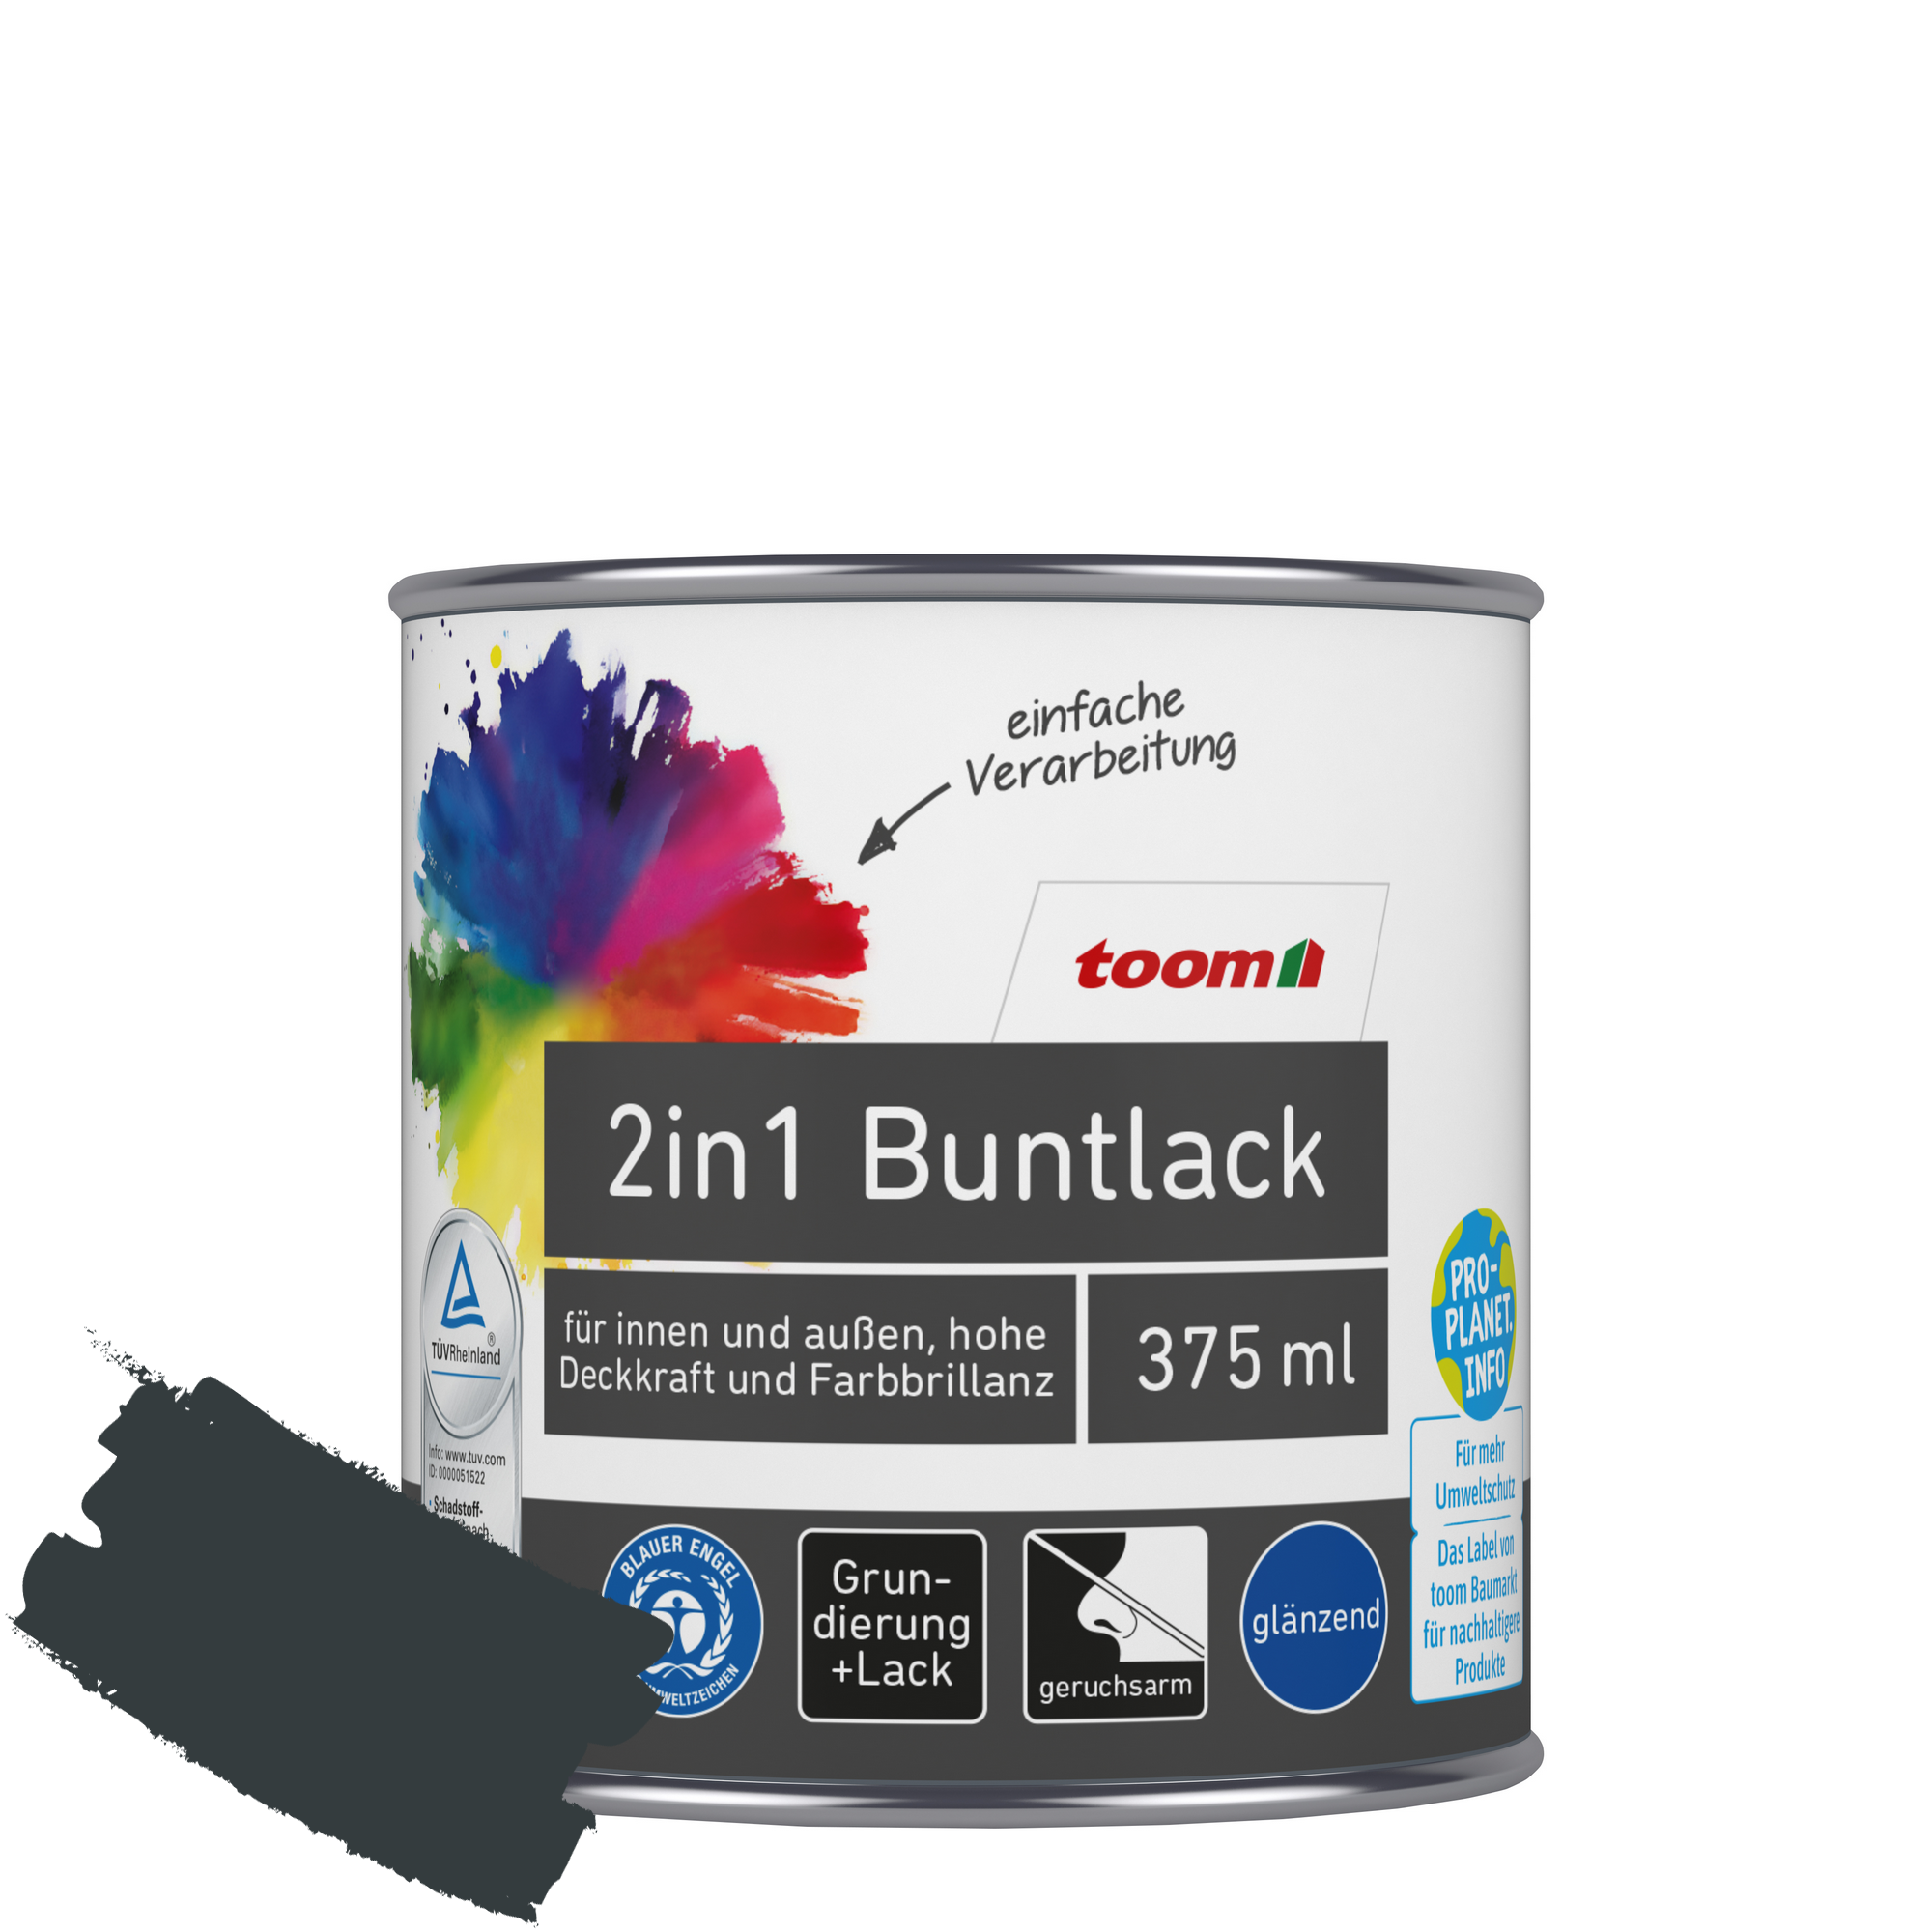 2in1 Buntlack 'Schattenspiel' anthrazitfarben glänzend 375 ml + product picture